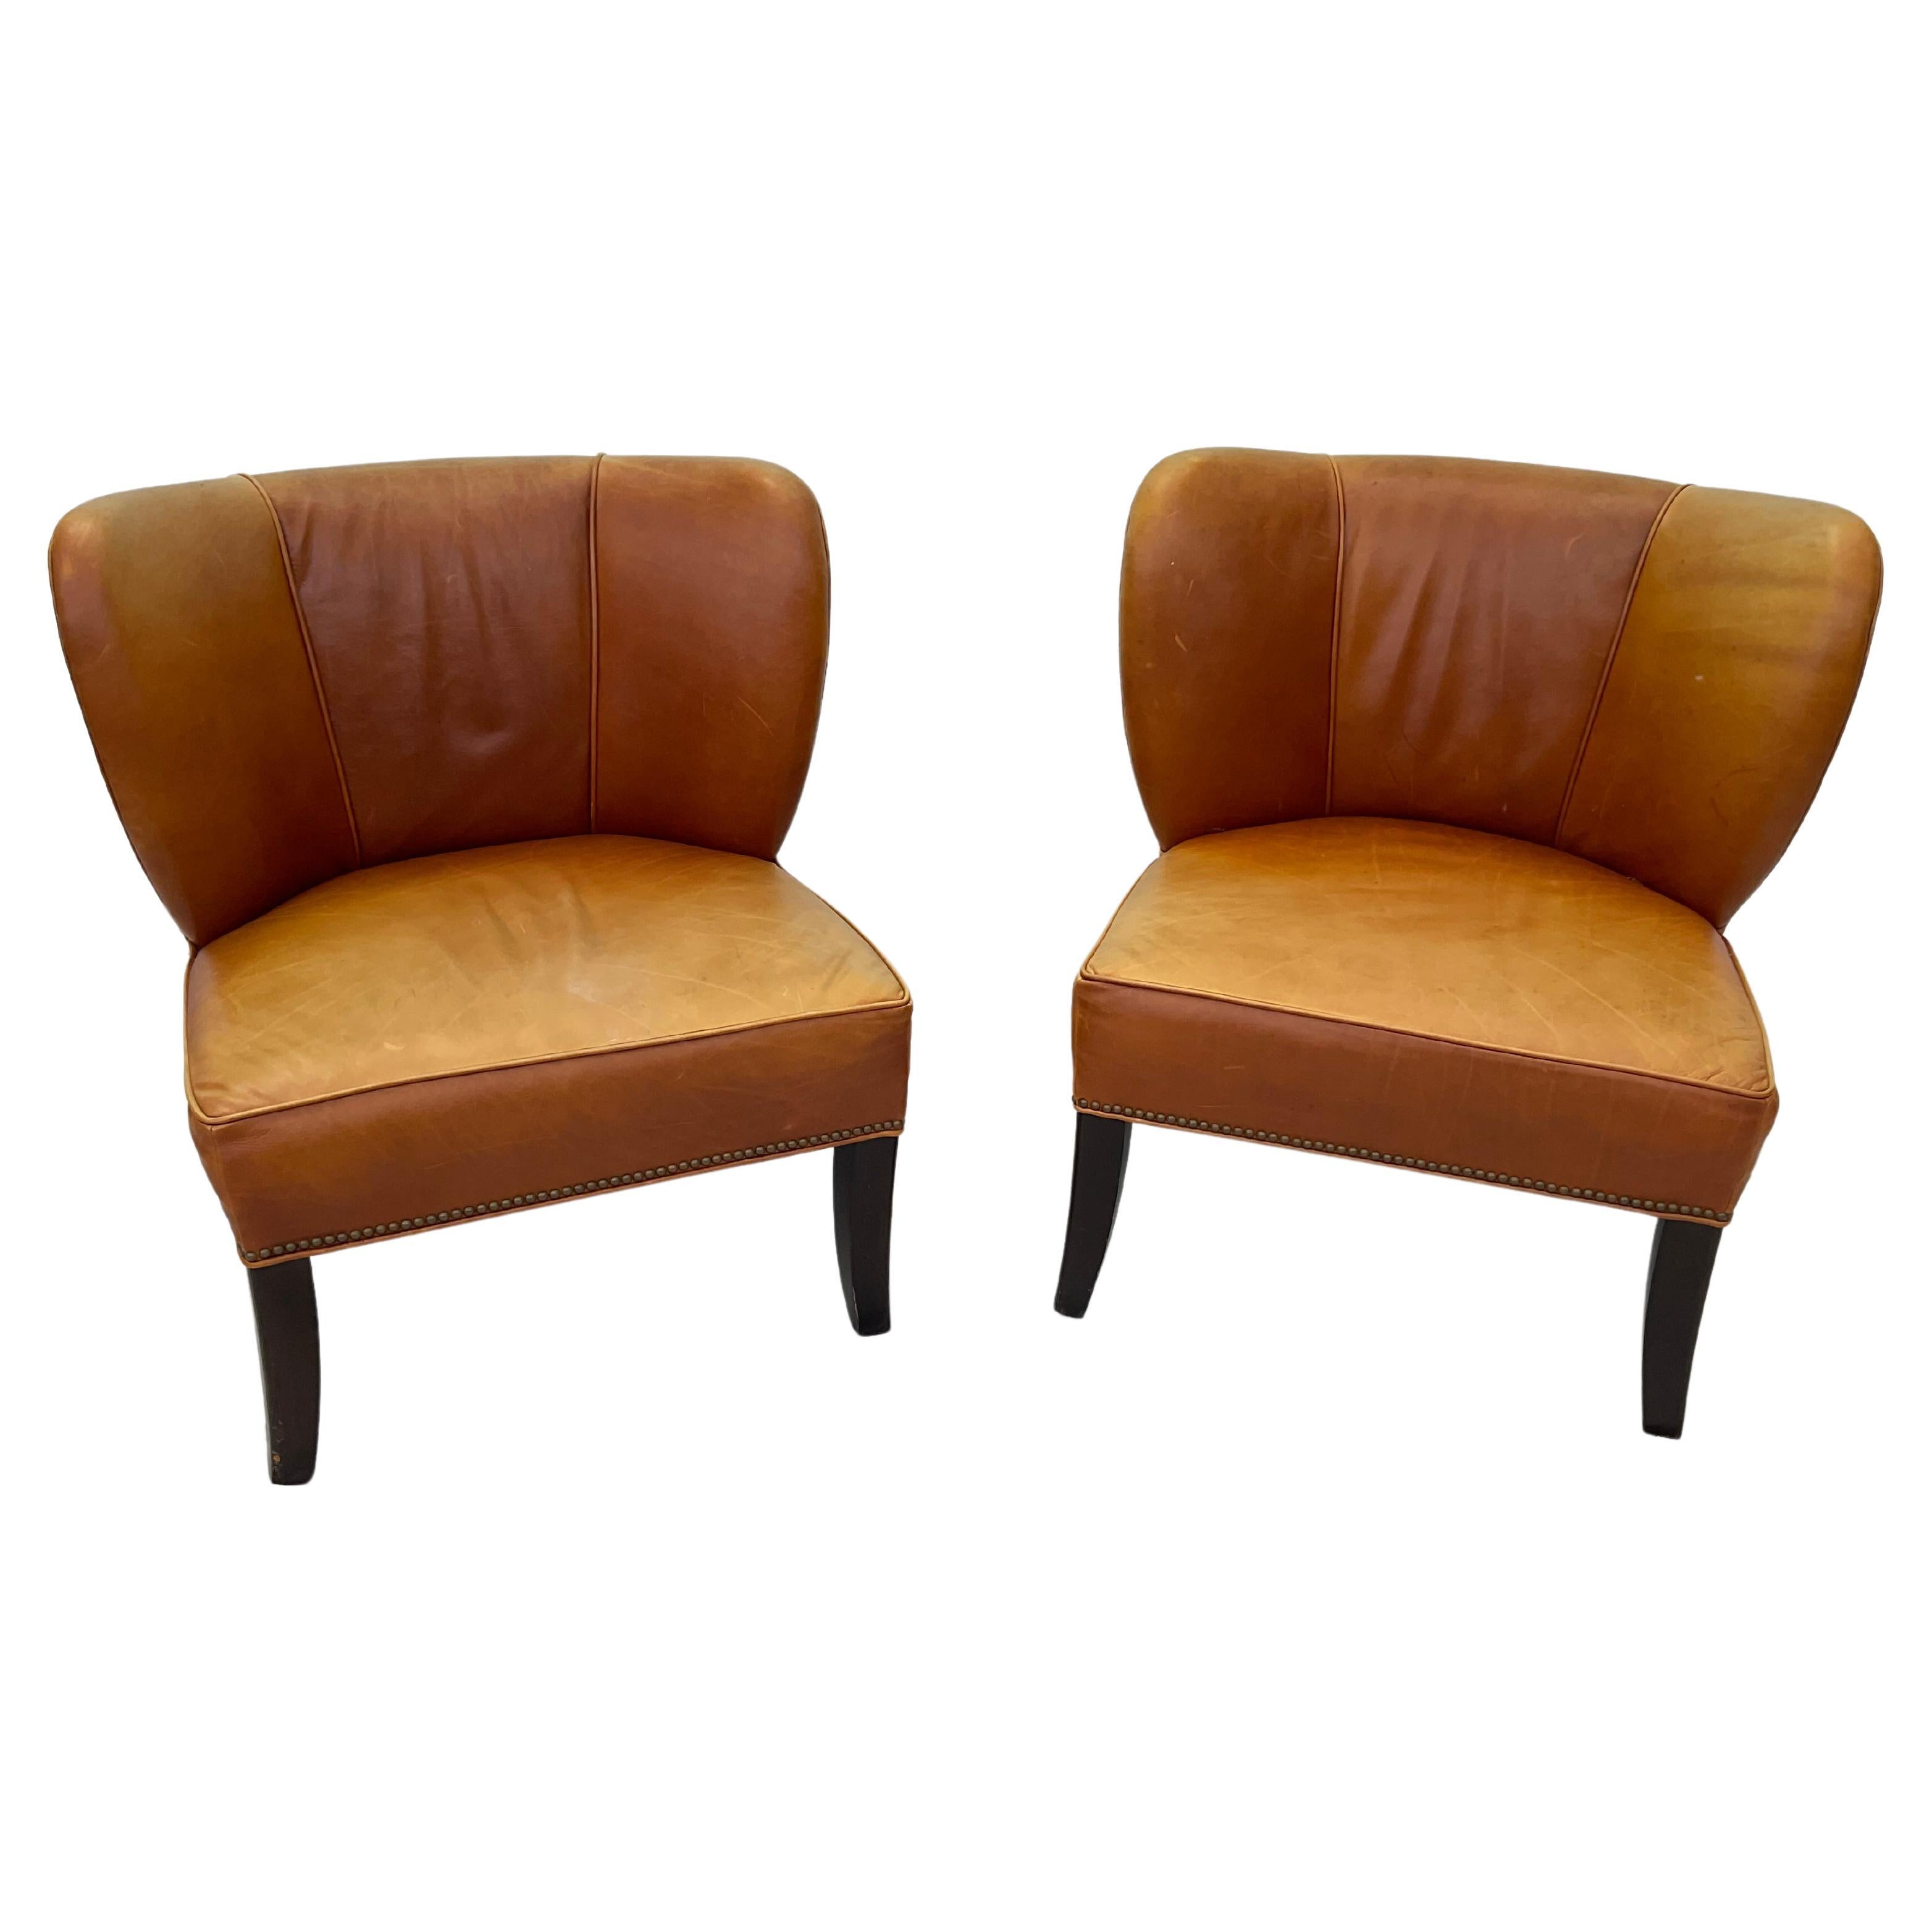 Magnifique paire de fauteuils de salon en cuir italien Arhaus avec une riche teinte ambrée et des têtes de clous en laiton sur des pieds en bois ébonisé. Beau cuir cassé en bon état général. Cuir italien de première qualité, fabriqué par des